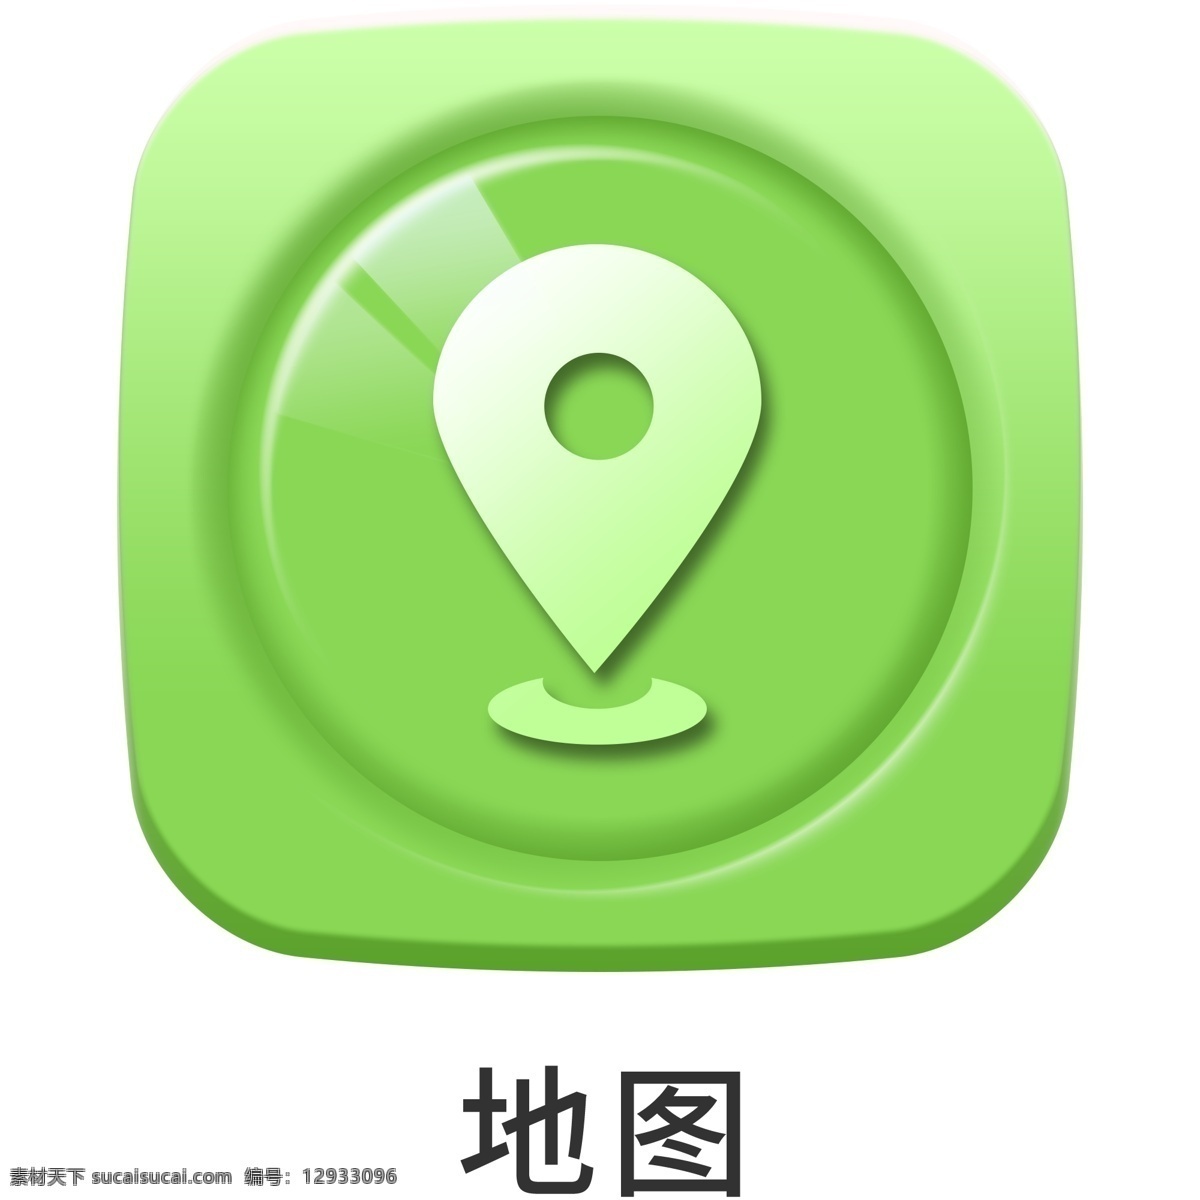 手机 主题 多彩 浮雕 地图 icon 元素 ui图标 彩色 图标 设计元素 手机主题 图标按钮